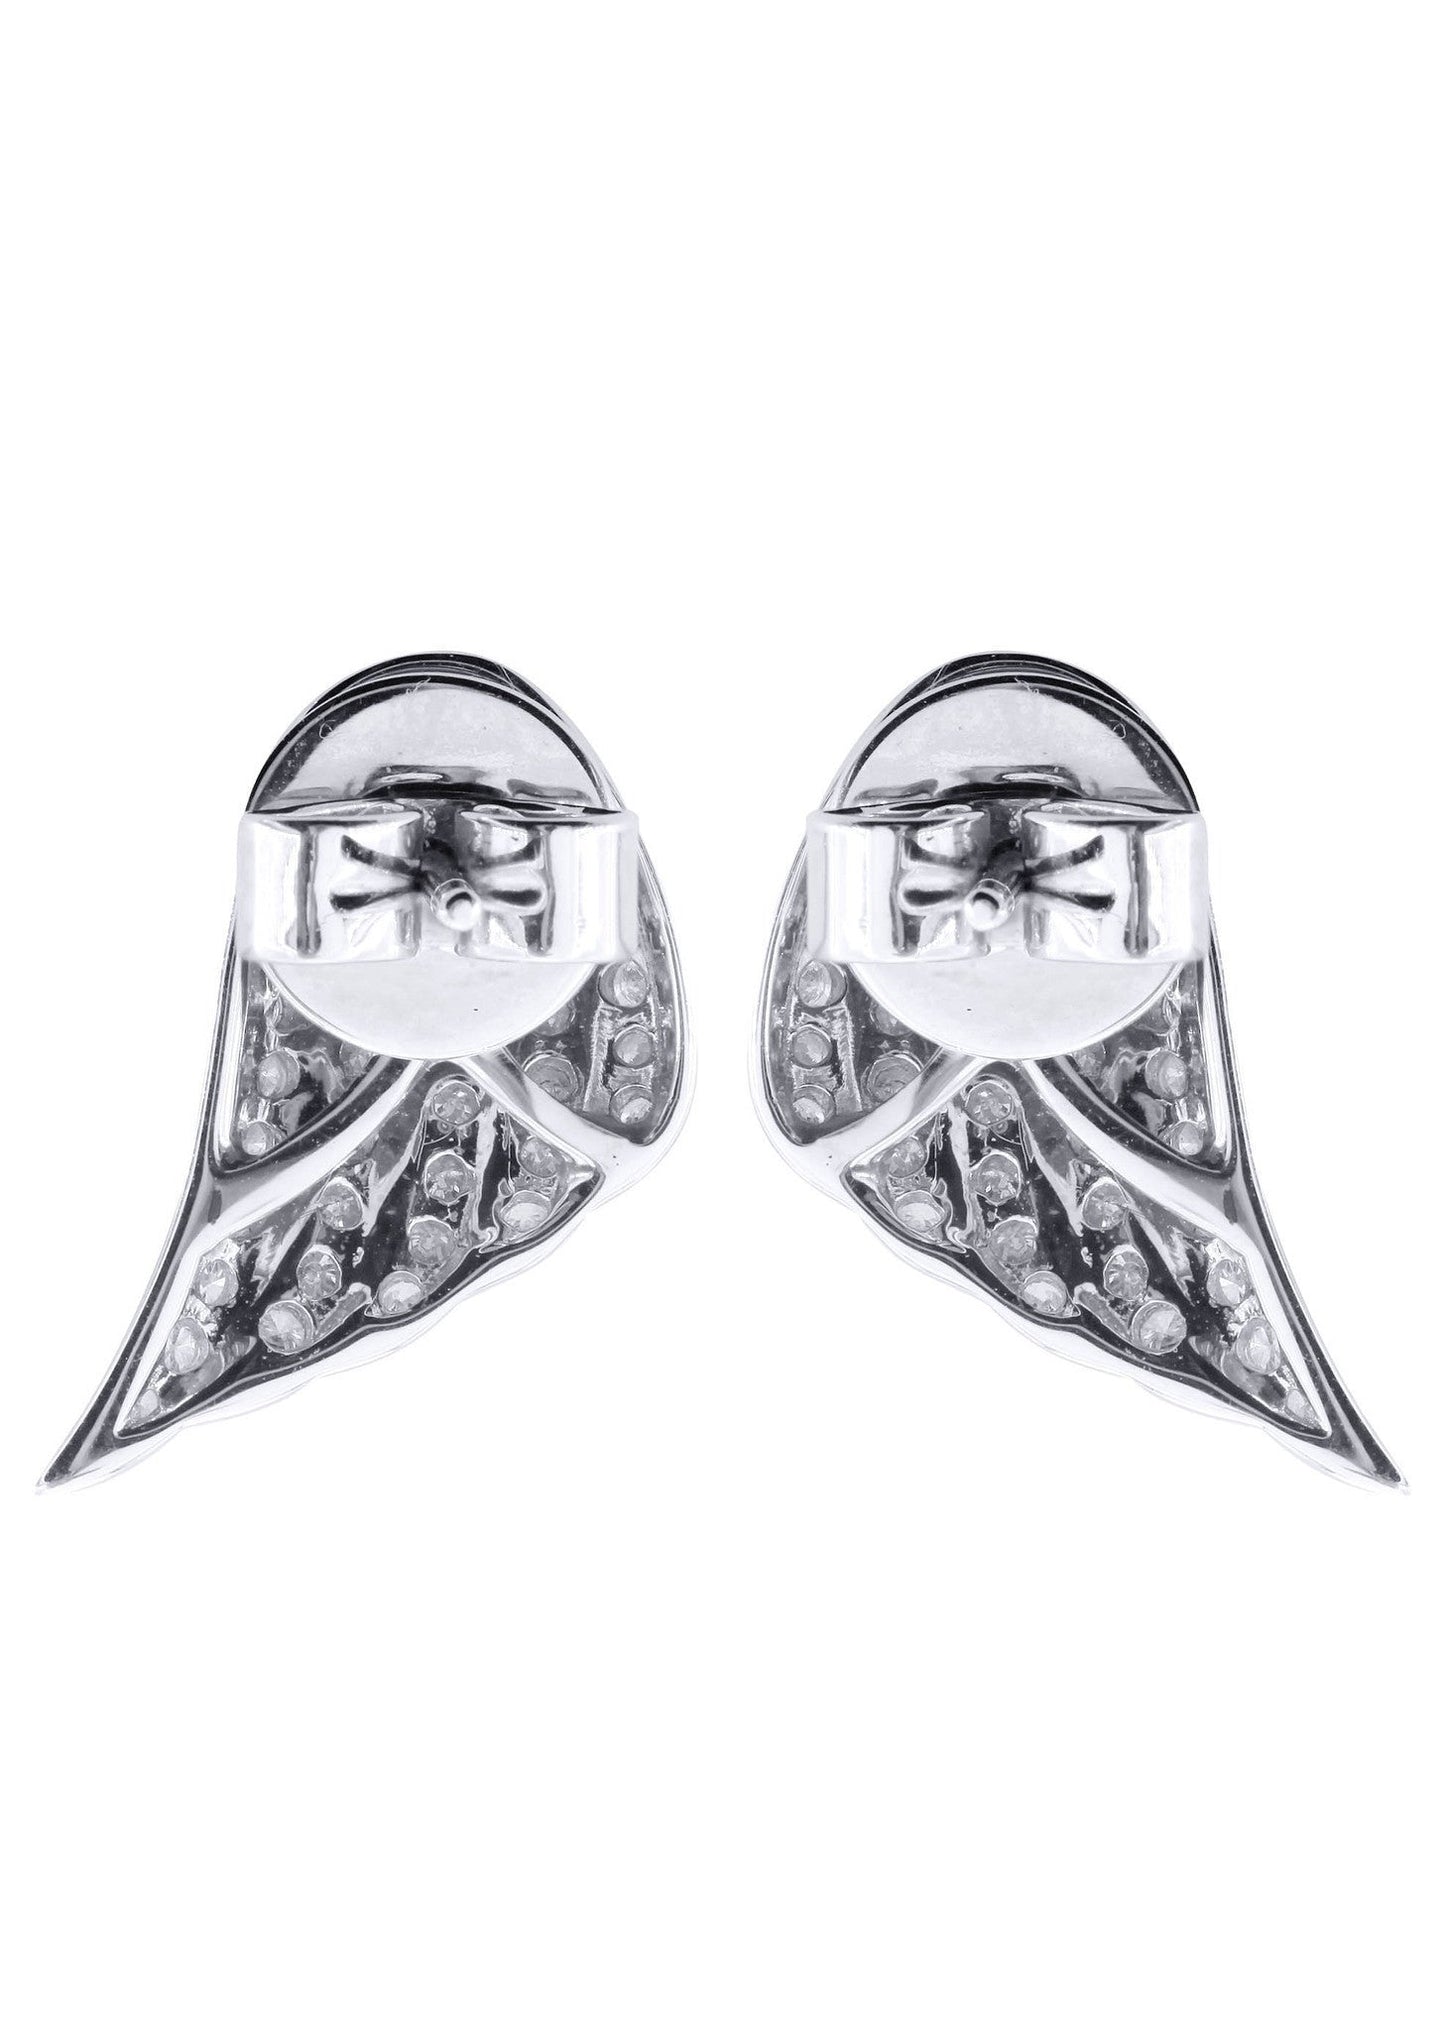 Angel Diamond Earrings For Men |  14K White Gold  | 0.89 Carats